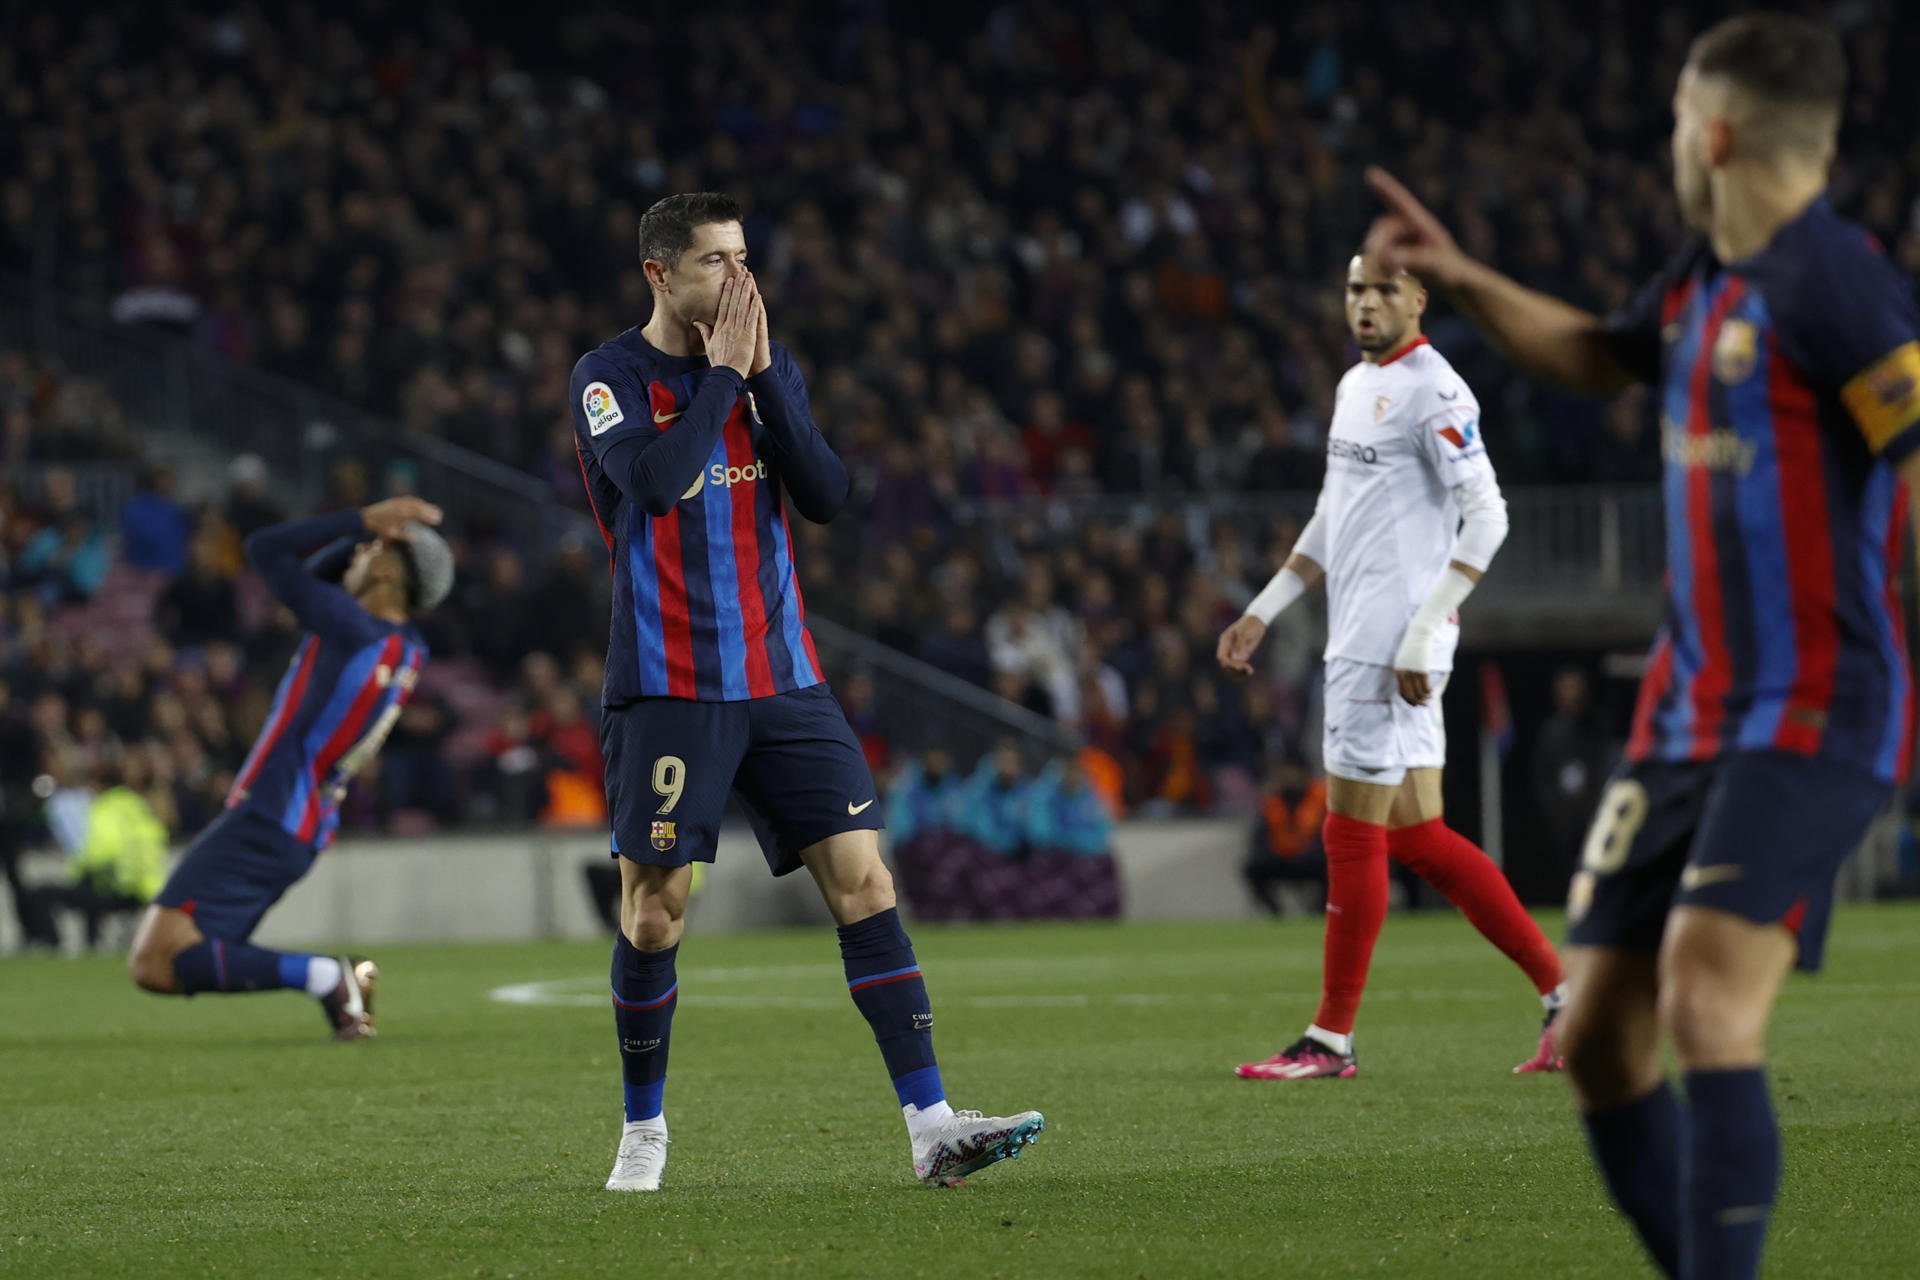 Lewandowski, sospechas por una promesa, en el vestuario del Barça creen que ha mentido